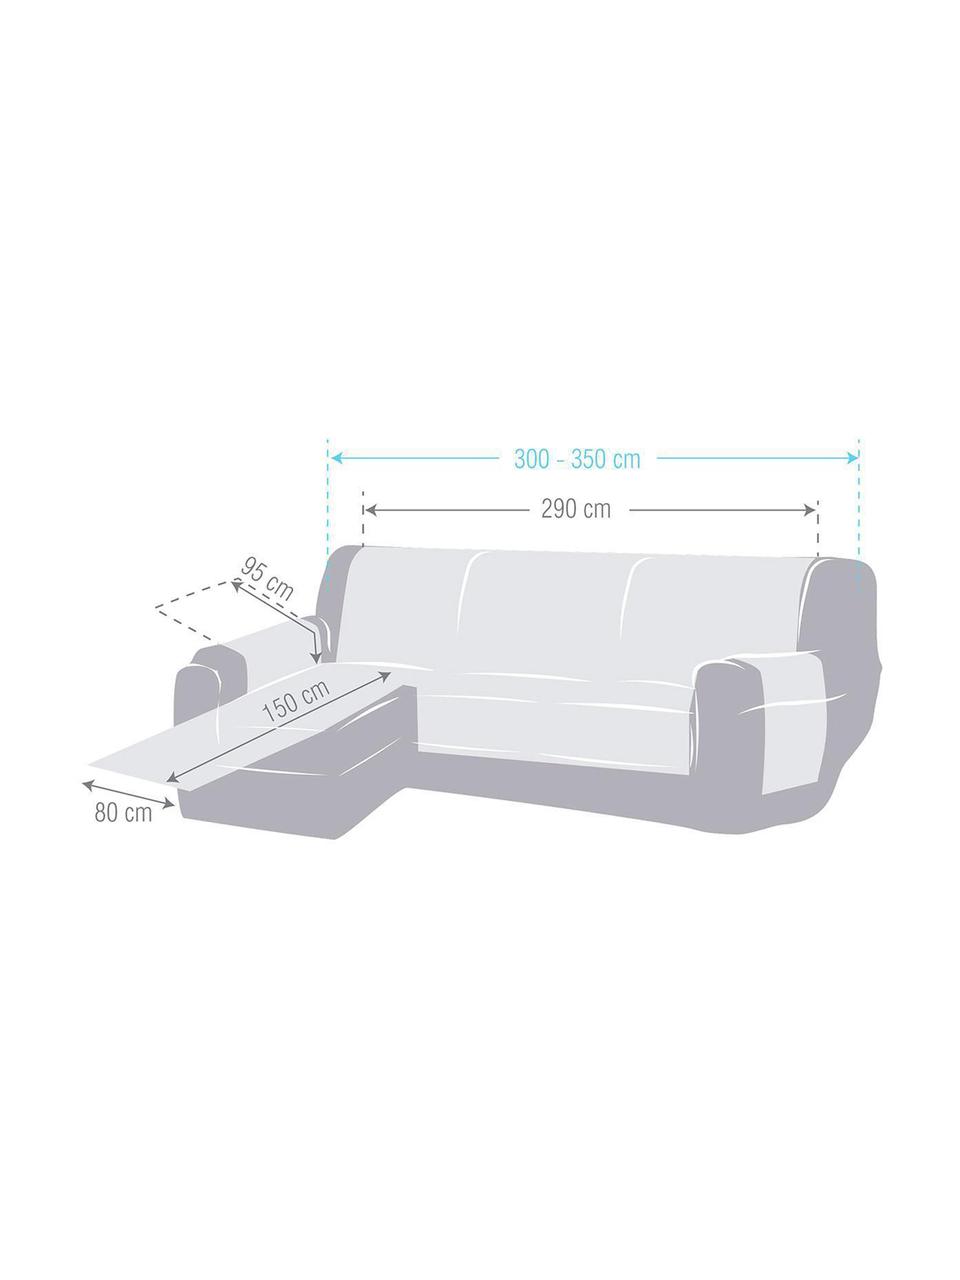 Narzuta na sofę narożną Levante, 65% bawełna, 35% poliester, Szarozielony, S 150 x D 290 cm, prawostronna